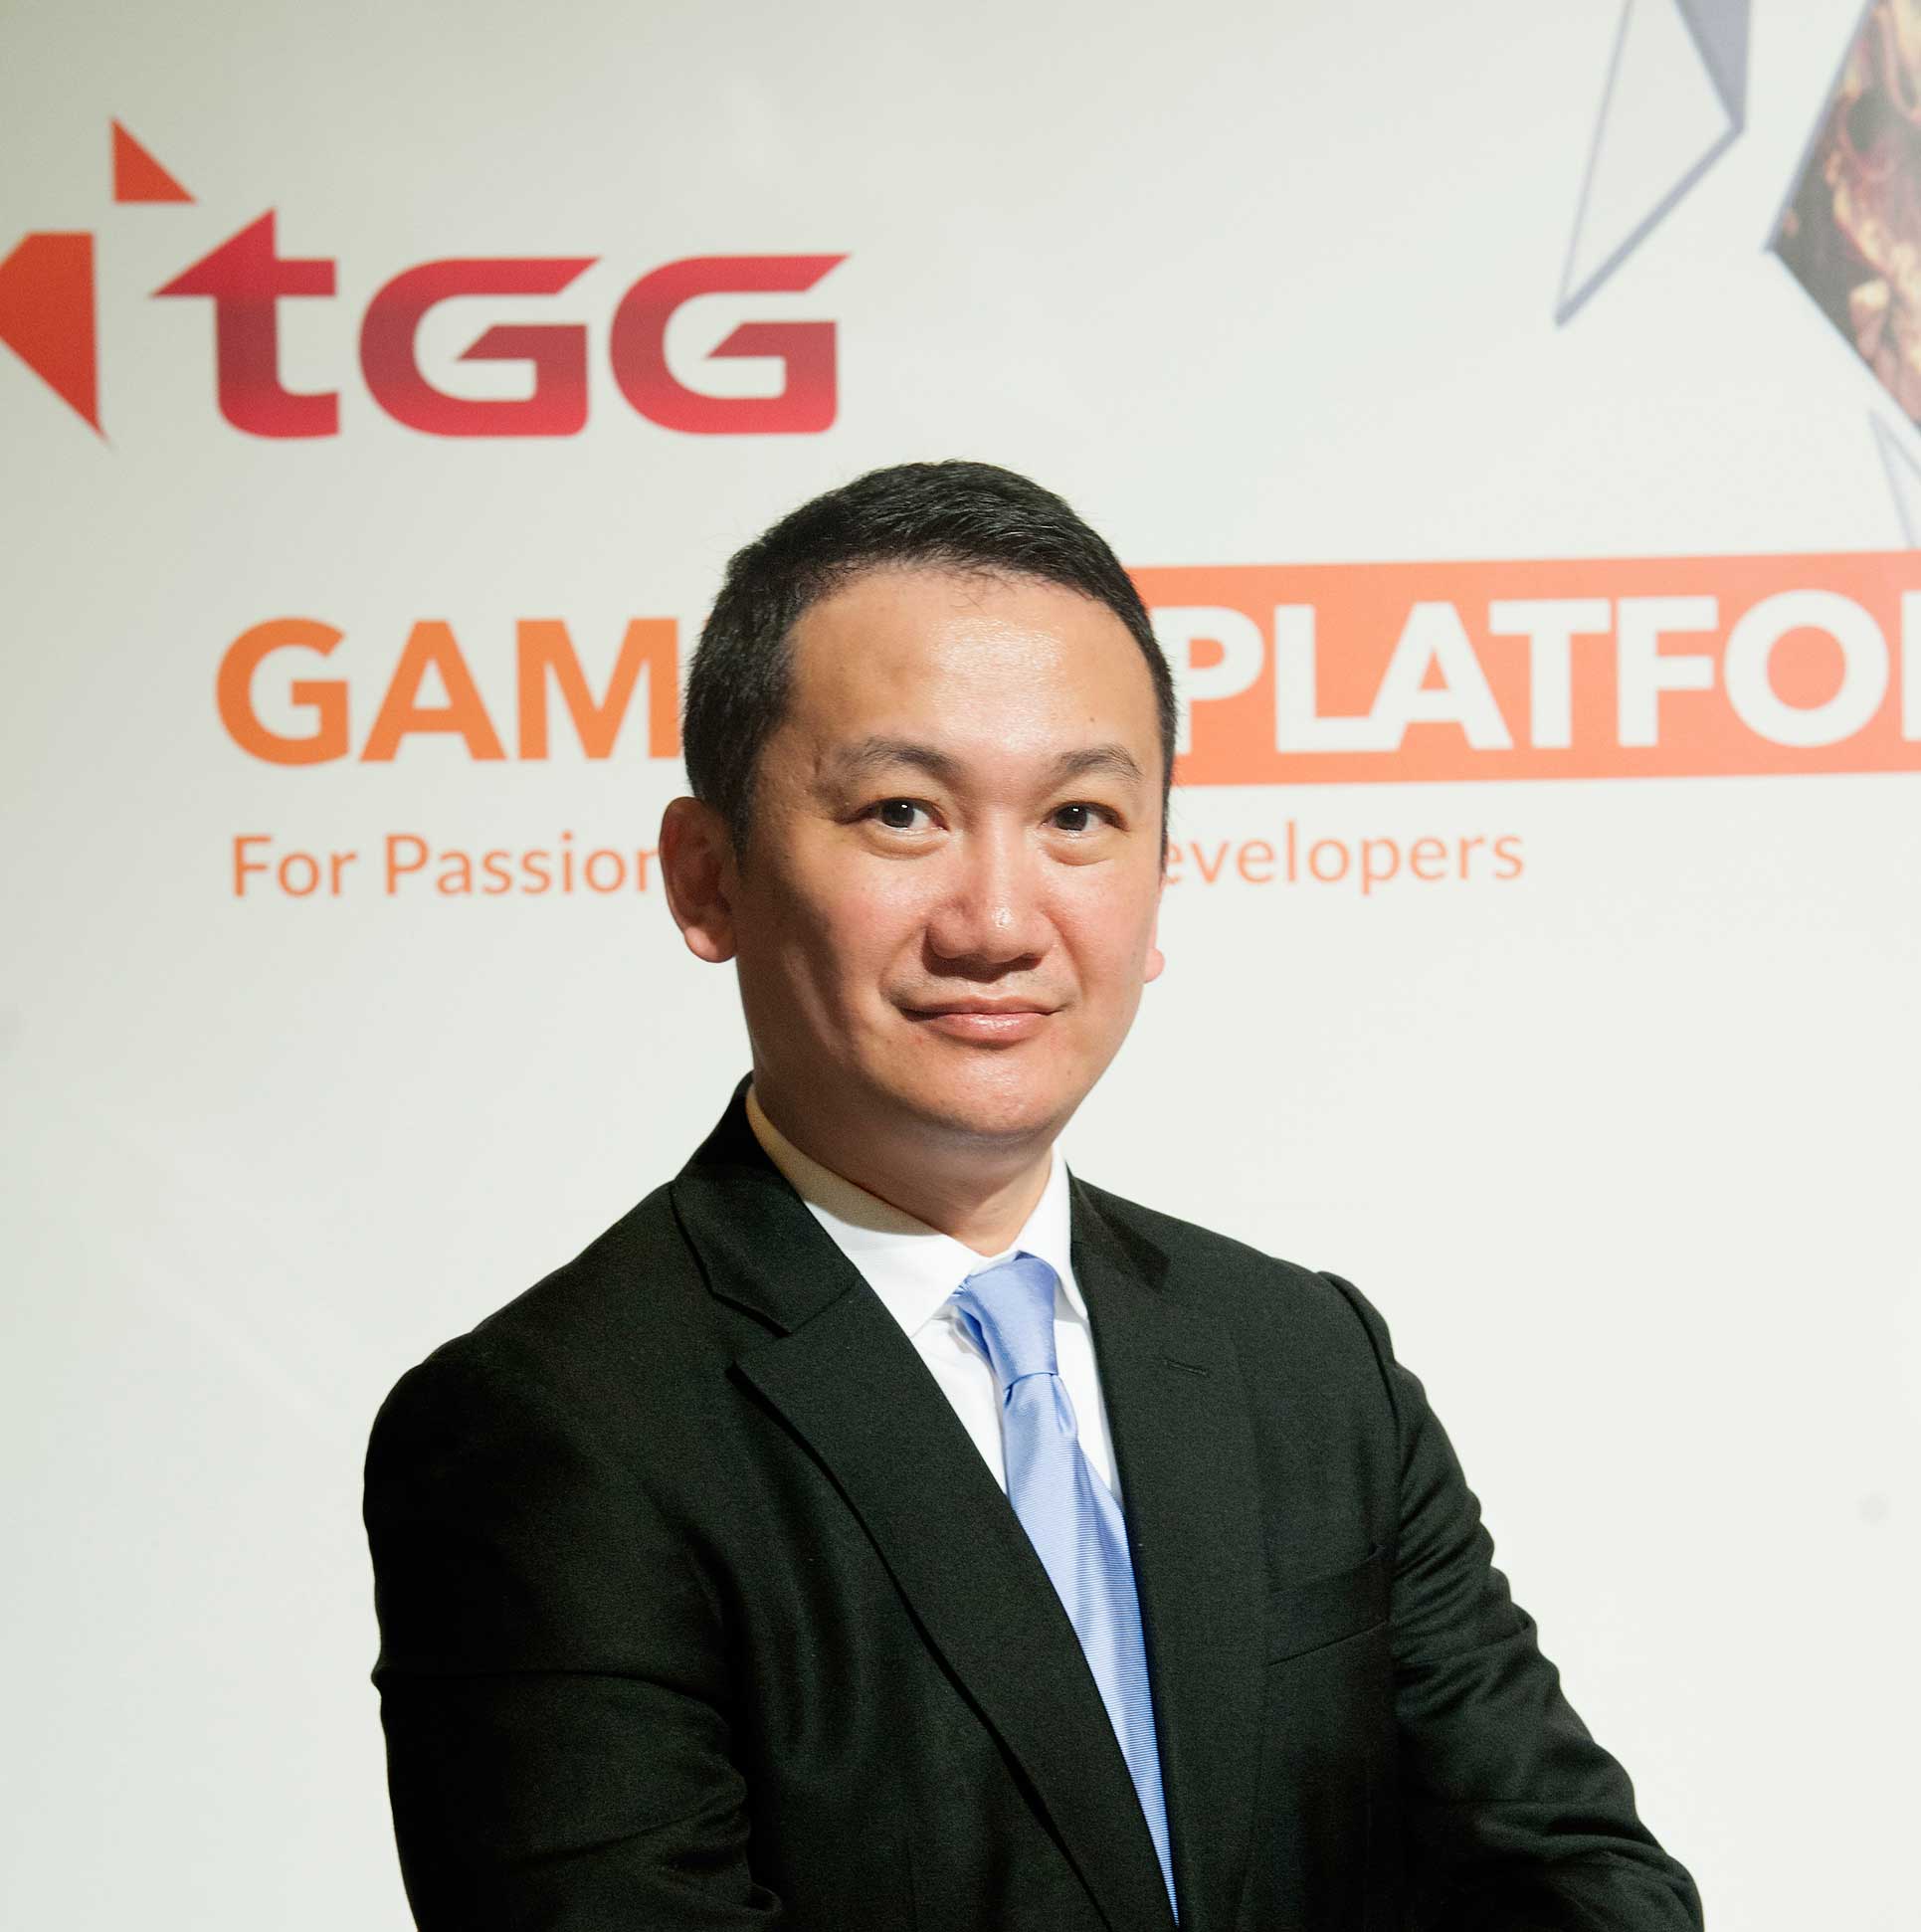 Hong Kong’s TGG joining 420 Global CEOs and Executives in Japan Gaming Congress 2017